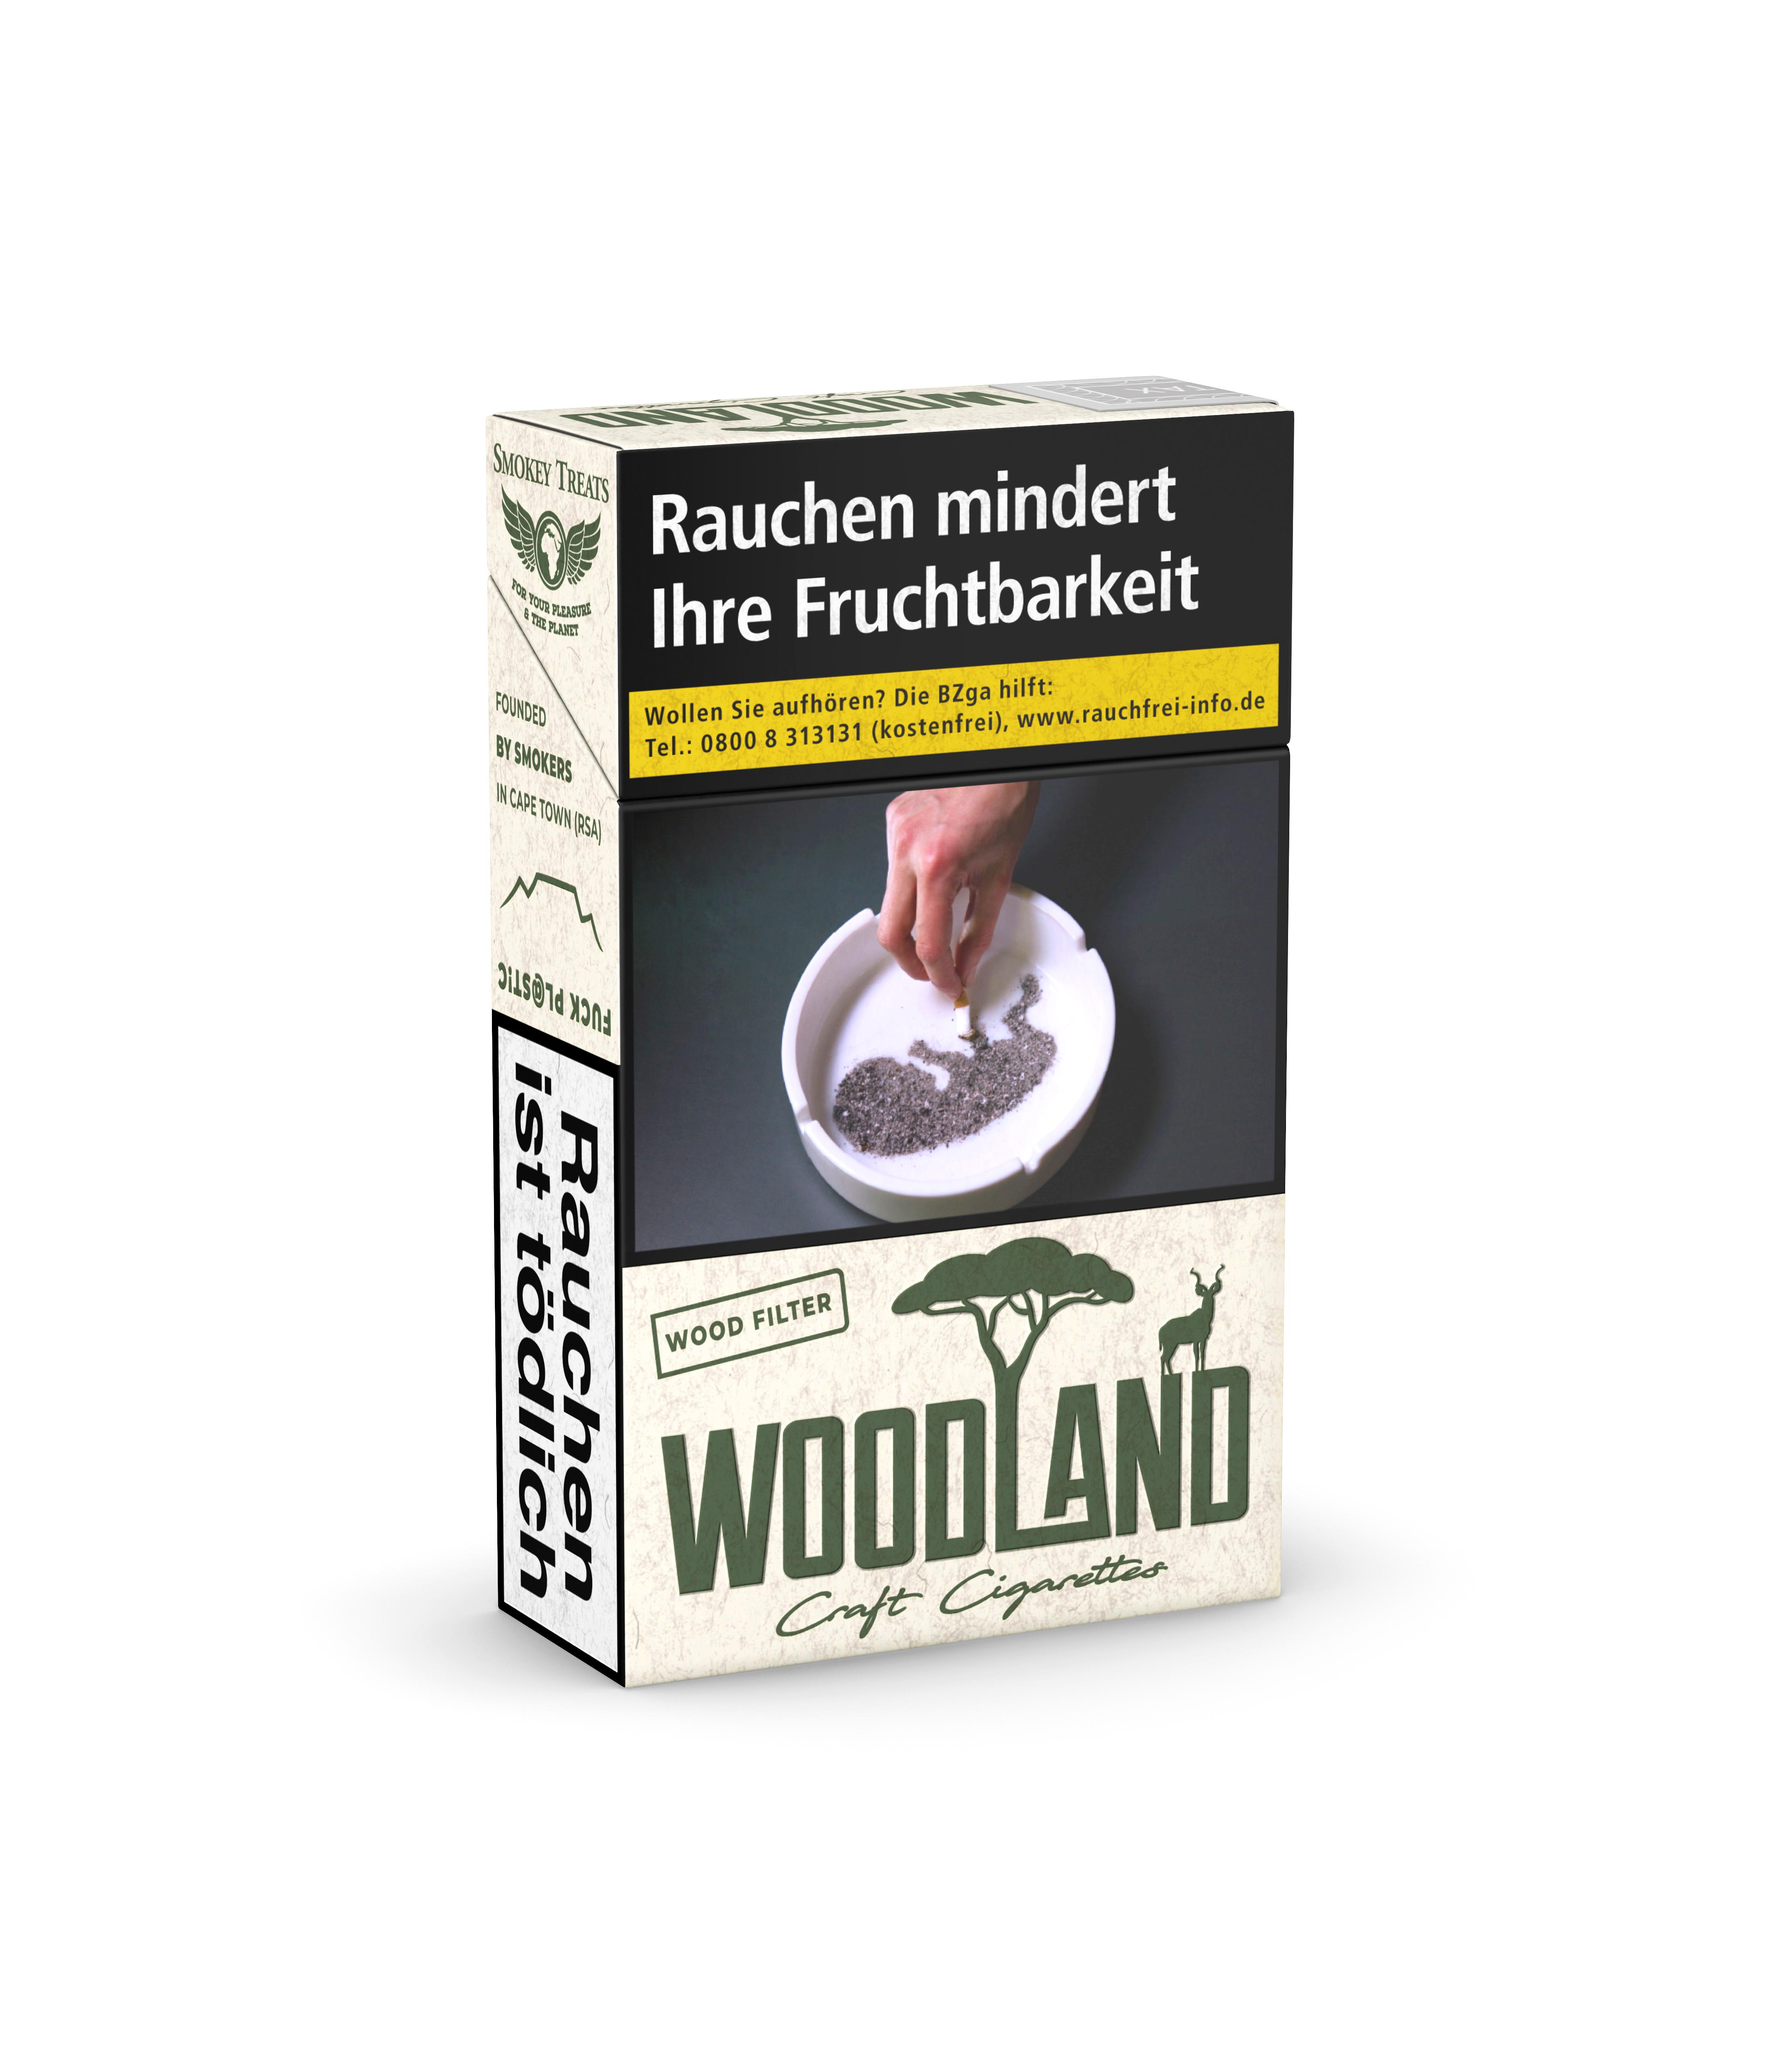 Woodland Craft Zigaretten 1 Stange